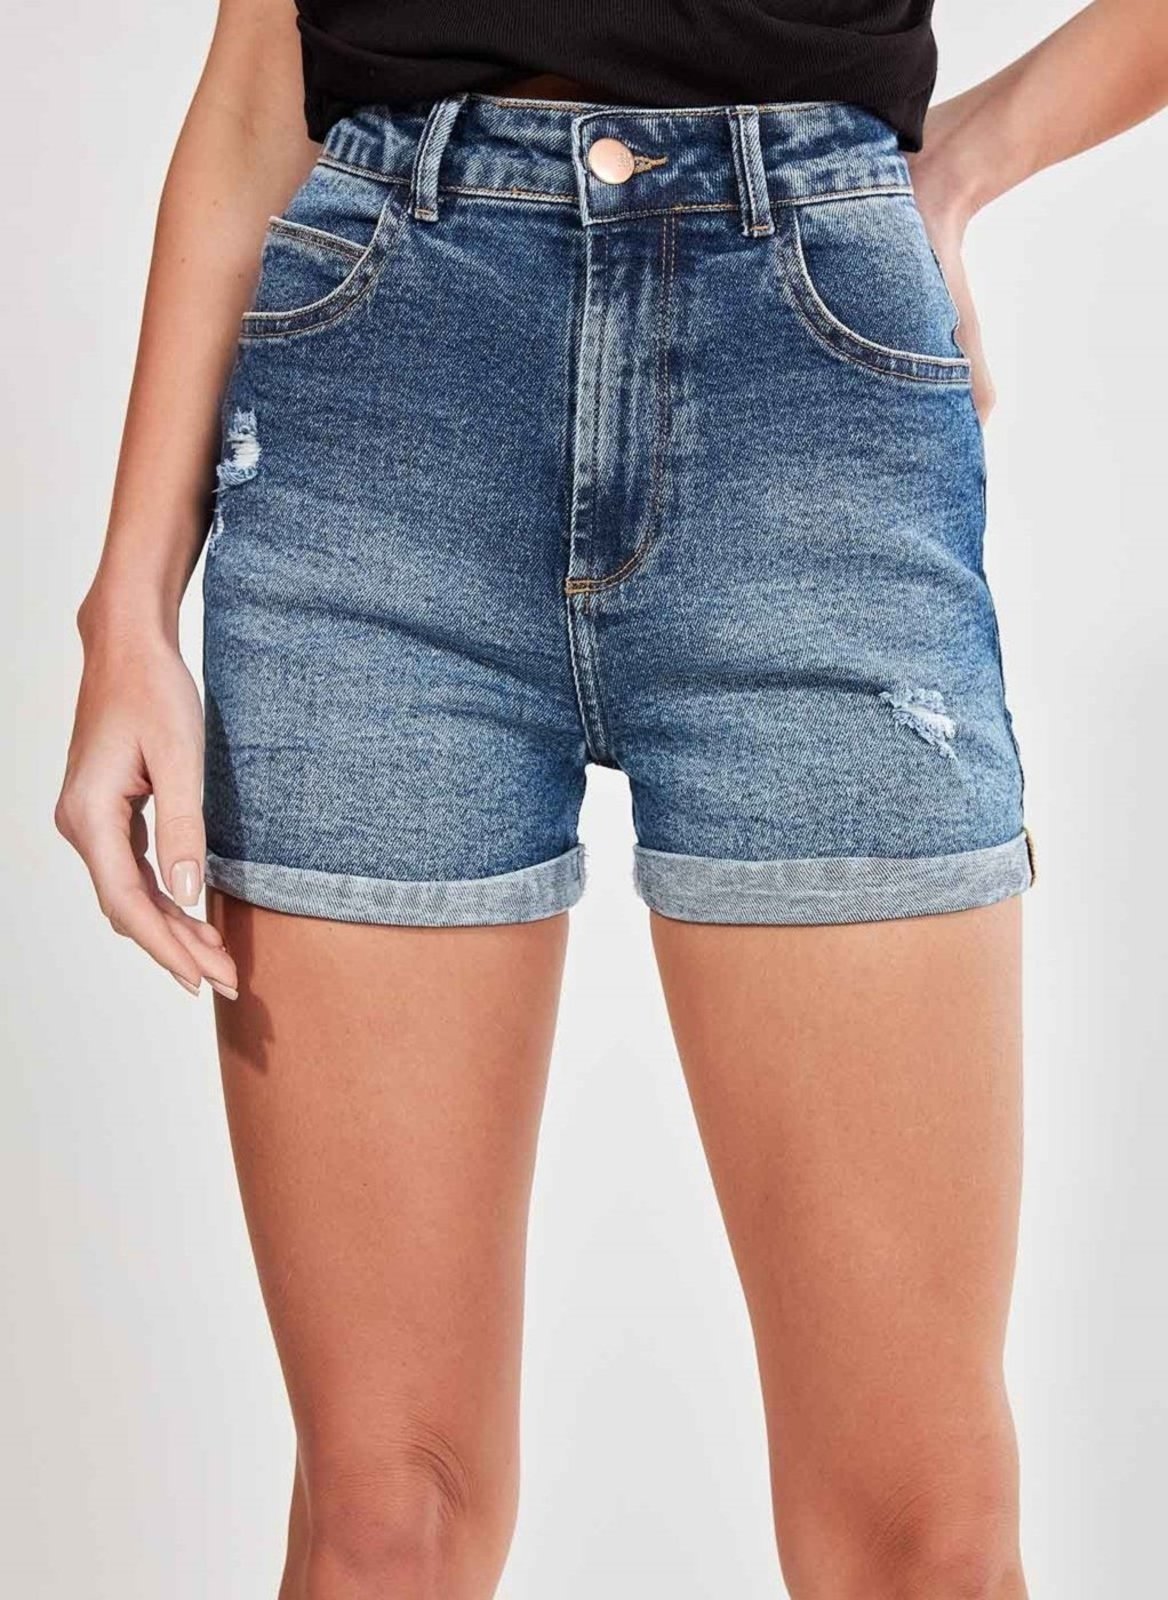 Short Jeans Hot Pants Cintura Alta - Compre Agora